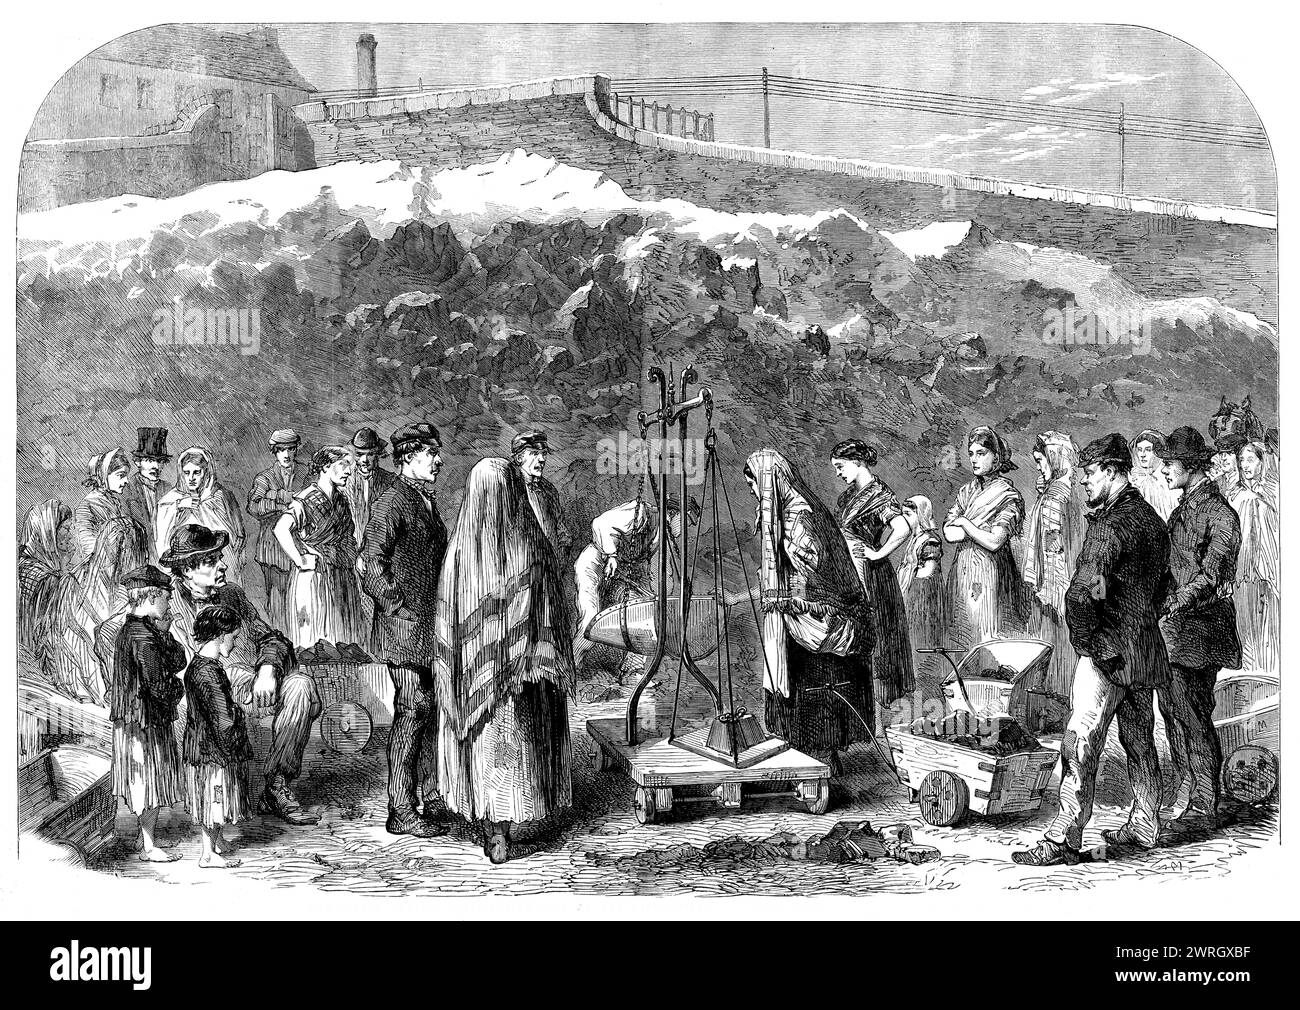 The Cotton Hunger: Verteilung von Kohle am Castle-Field Old Coal-Kai, Manchester, 1862. Wohltätigkeitsorganisation für arbeitslose Textilarbeiter von Lancashire. "Diejenigen, die in der vergangenen Woche meinen Bericht über Manchester gelesen haben, werden sich daran erinnern, dass ich erklärt habe, dass jeder Empfänger der Hilfe ohne weiteren Antrag Anspruch auf eine Gewährung von Kohlen hatte, die in ihrer Menge mit der Familie variieren. Ein großer Fonds wird zur Verfügung gestellt und von einem Unterausschuss, der im Rahmen der Provident Society tätig ist, für die Versorgung mit Treibstoff bereitgestellt. Die Verteilung begann vor ein paar Wochen und hat begonnen, ihre Auswirkungen auf die Menschen zu zeigen, die von ihren besonderen strömen Stockfoto